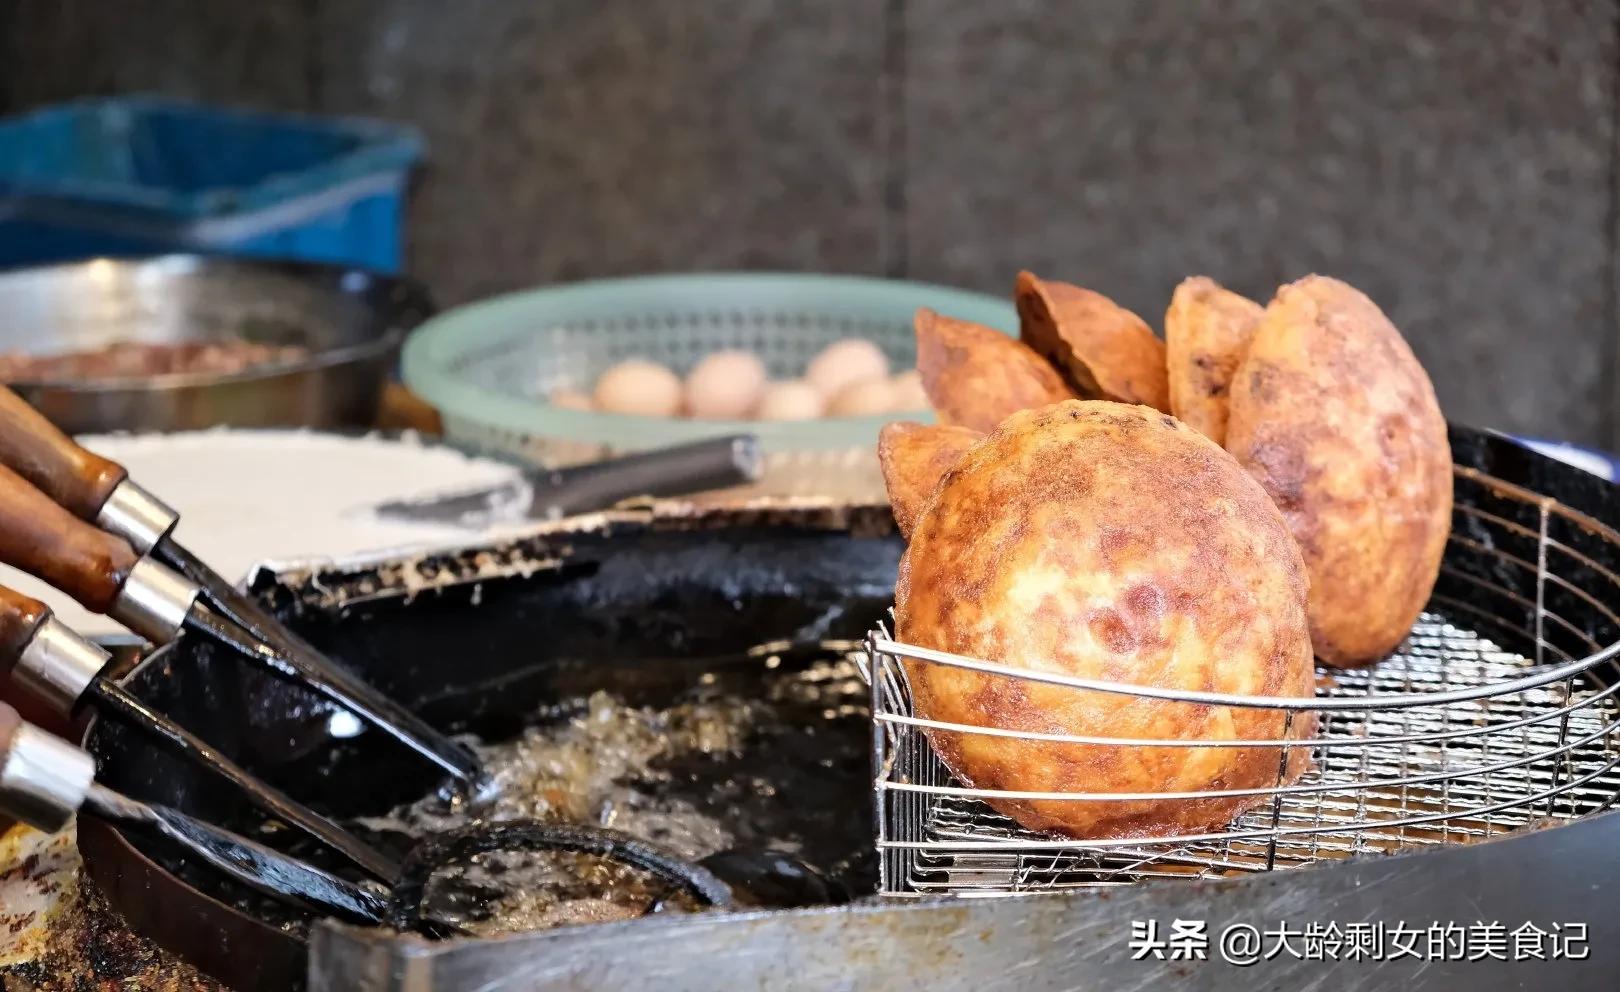 中华美食之温州名小吃-温州鱼胶冻 美容养颜女人孩子都爱吃 - 哔哩哔哩